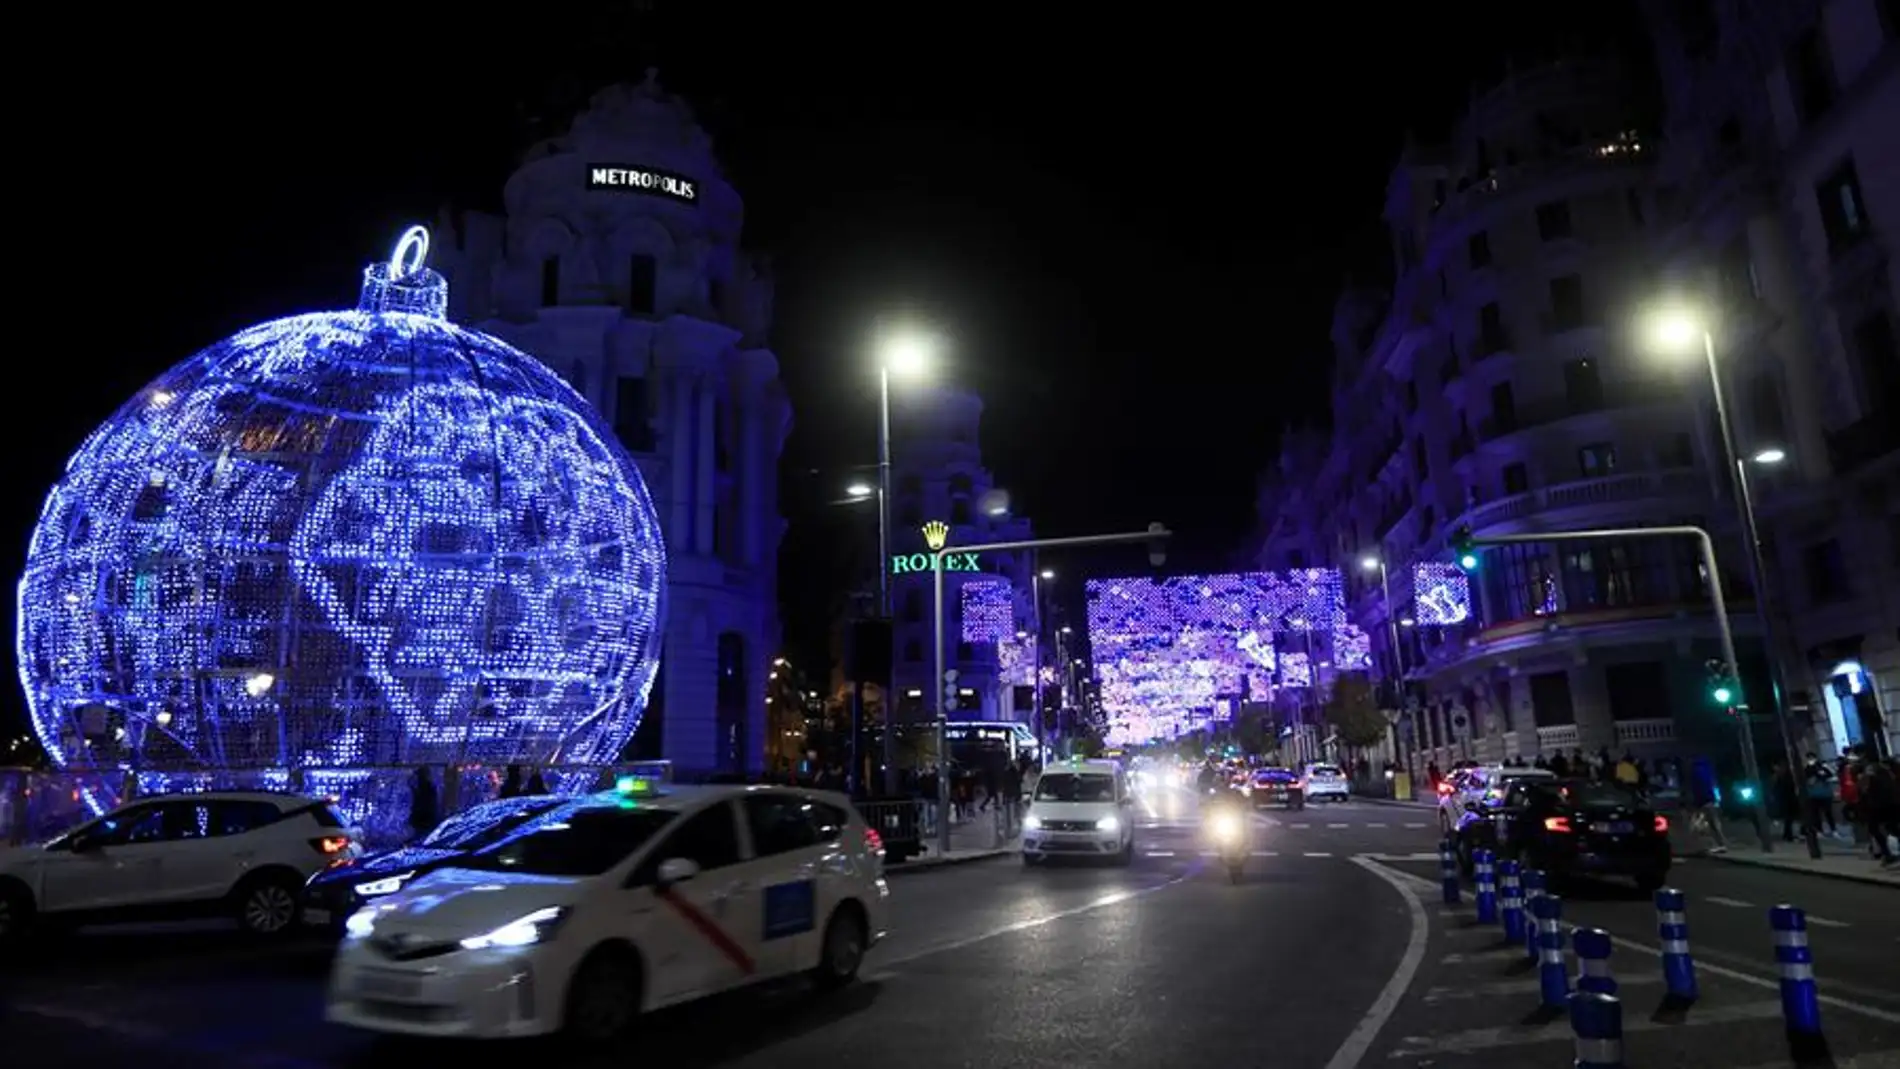 La iluminación navideña decora ya muchas ciudades españolas